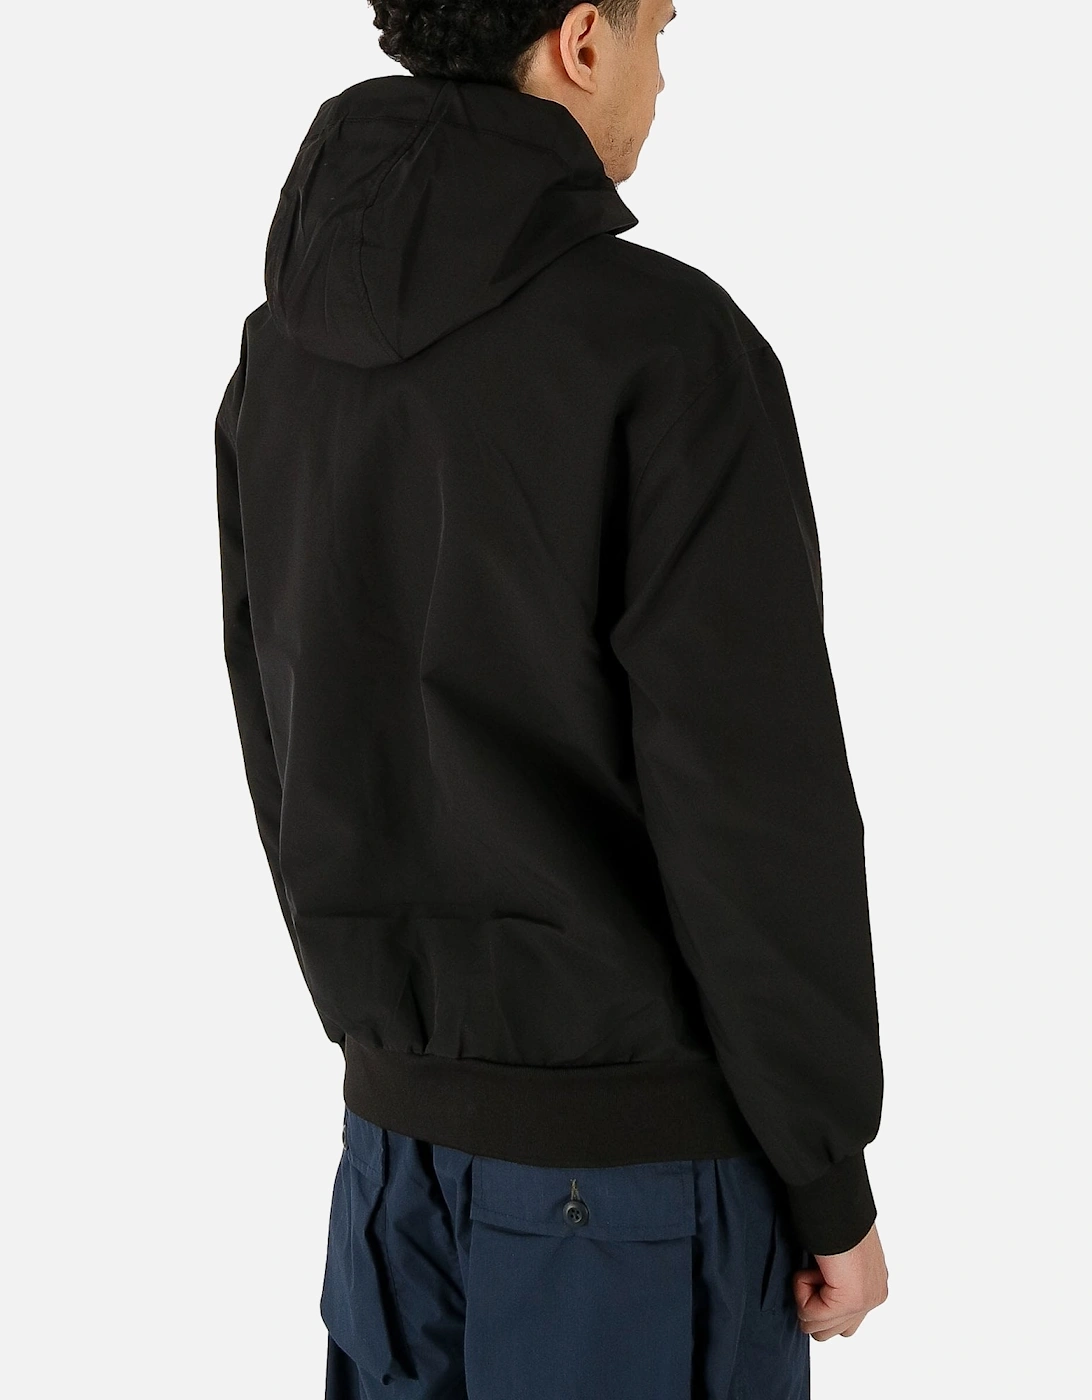 ADV Light Hooded Black Jacket